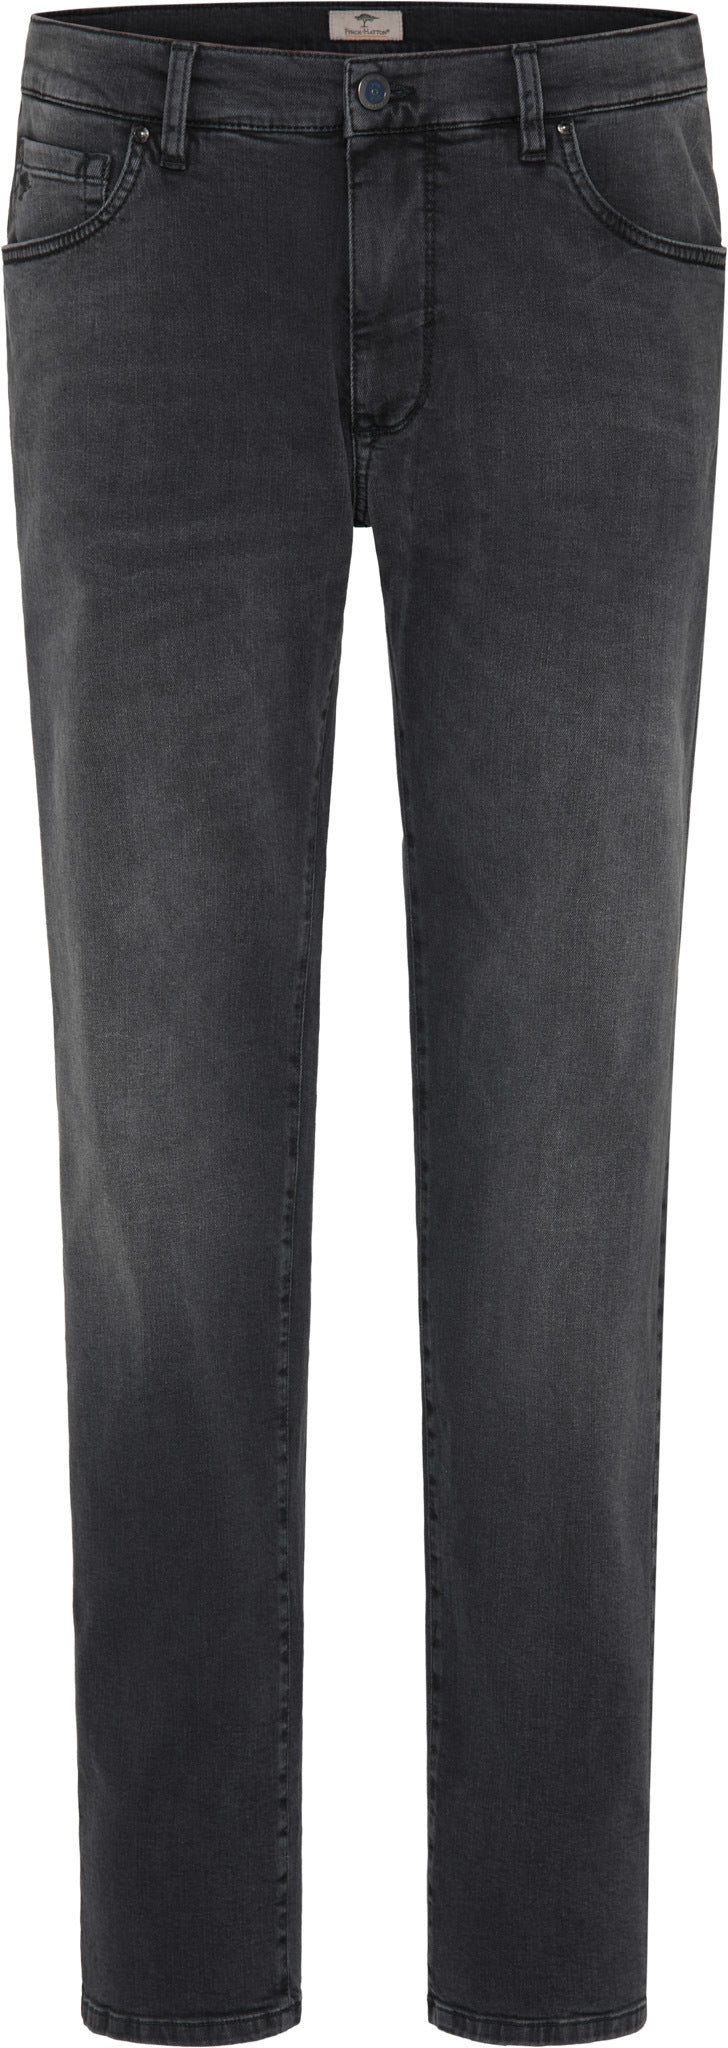 Fynch Hatton Durban Anthracite Denim Jeans